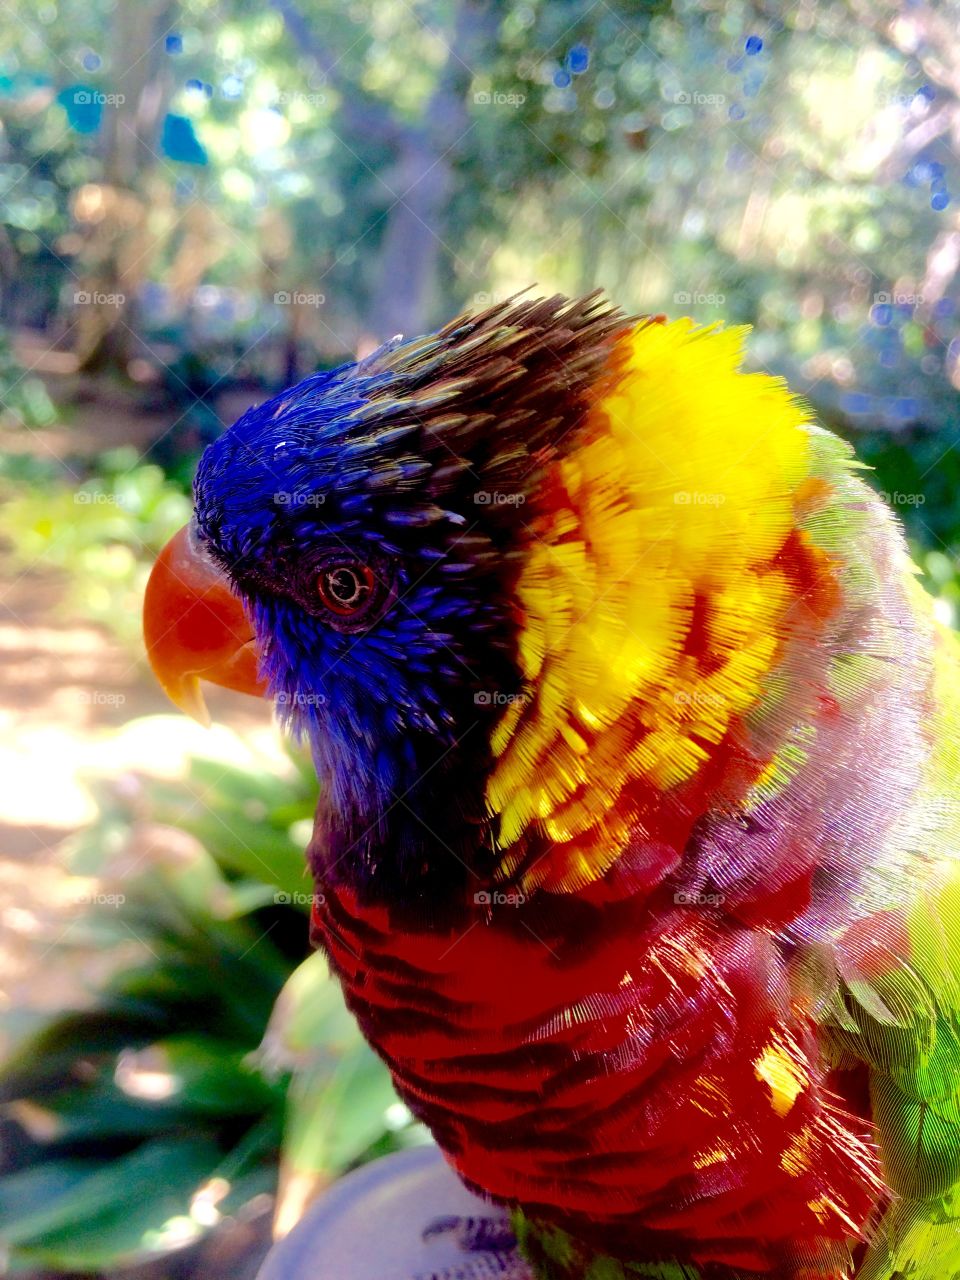 Close-up of a lorikeet parrot